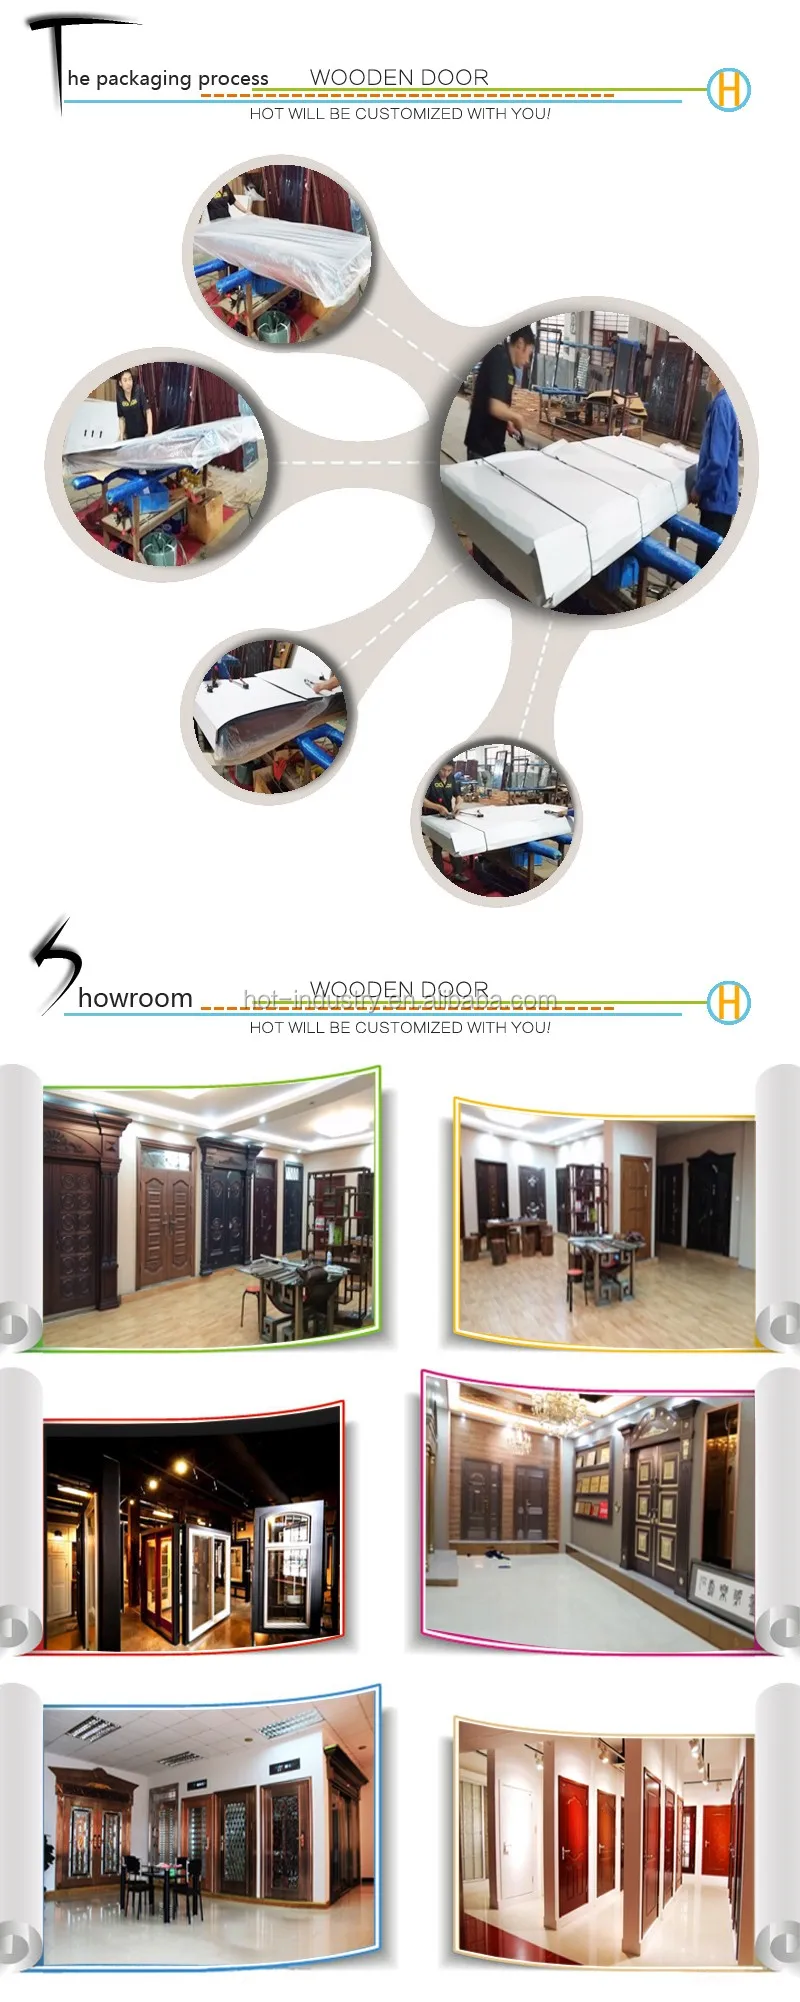 China Classical Elegant Interior PVC Door Moisture-proof Waterproof PVC Bathroom Door Price India Used For Hotel Room Door